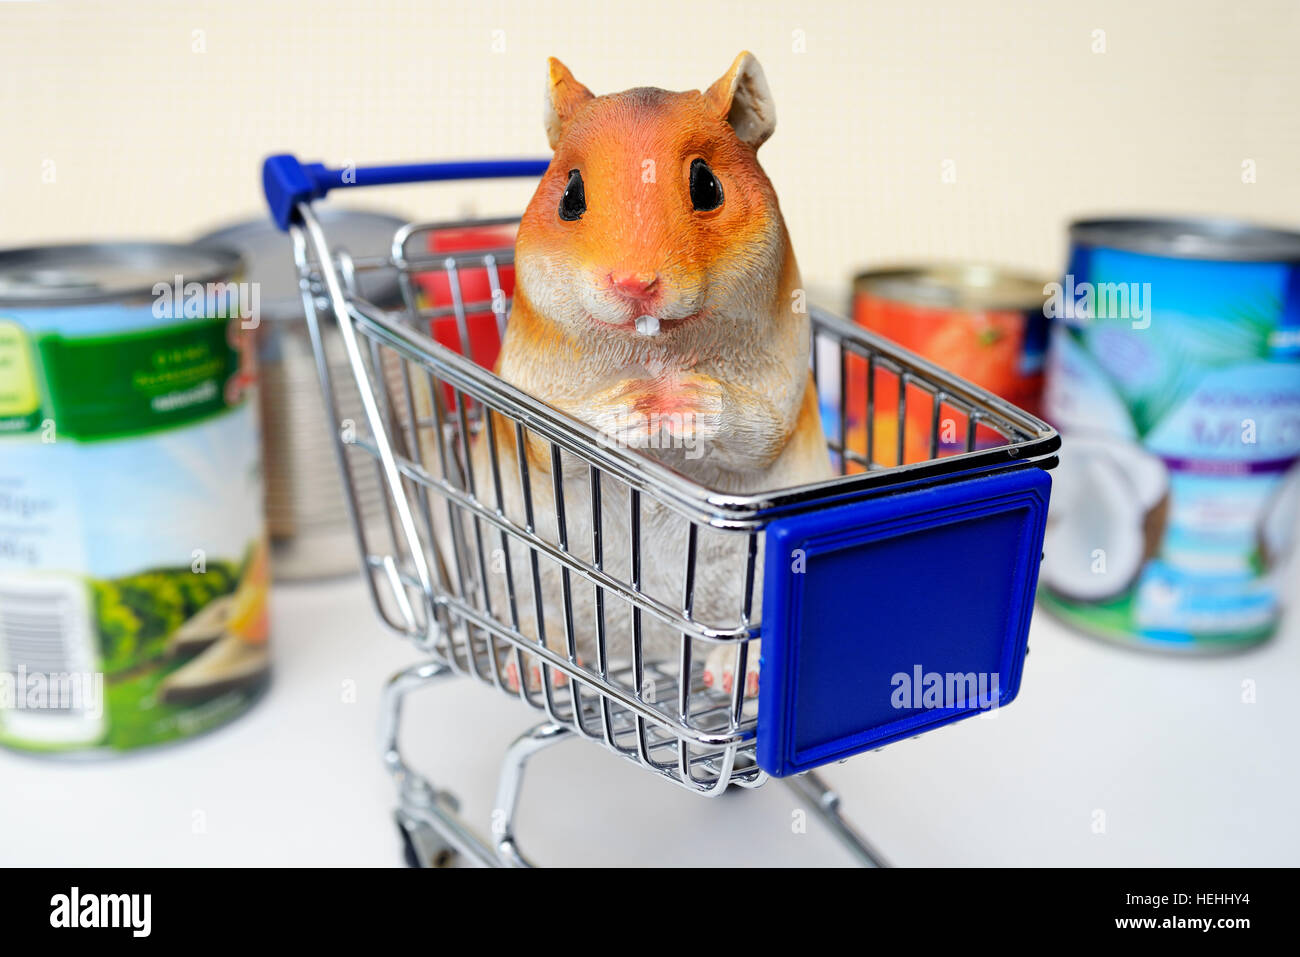 Hamsterfigur im Einkaufswagen, Symbolfoto Hamsterkaeufe Stock Photo